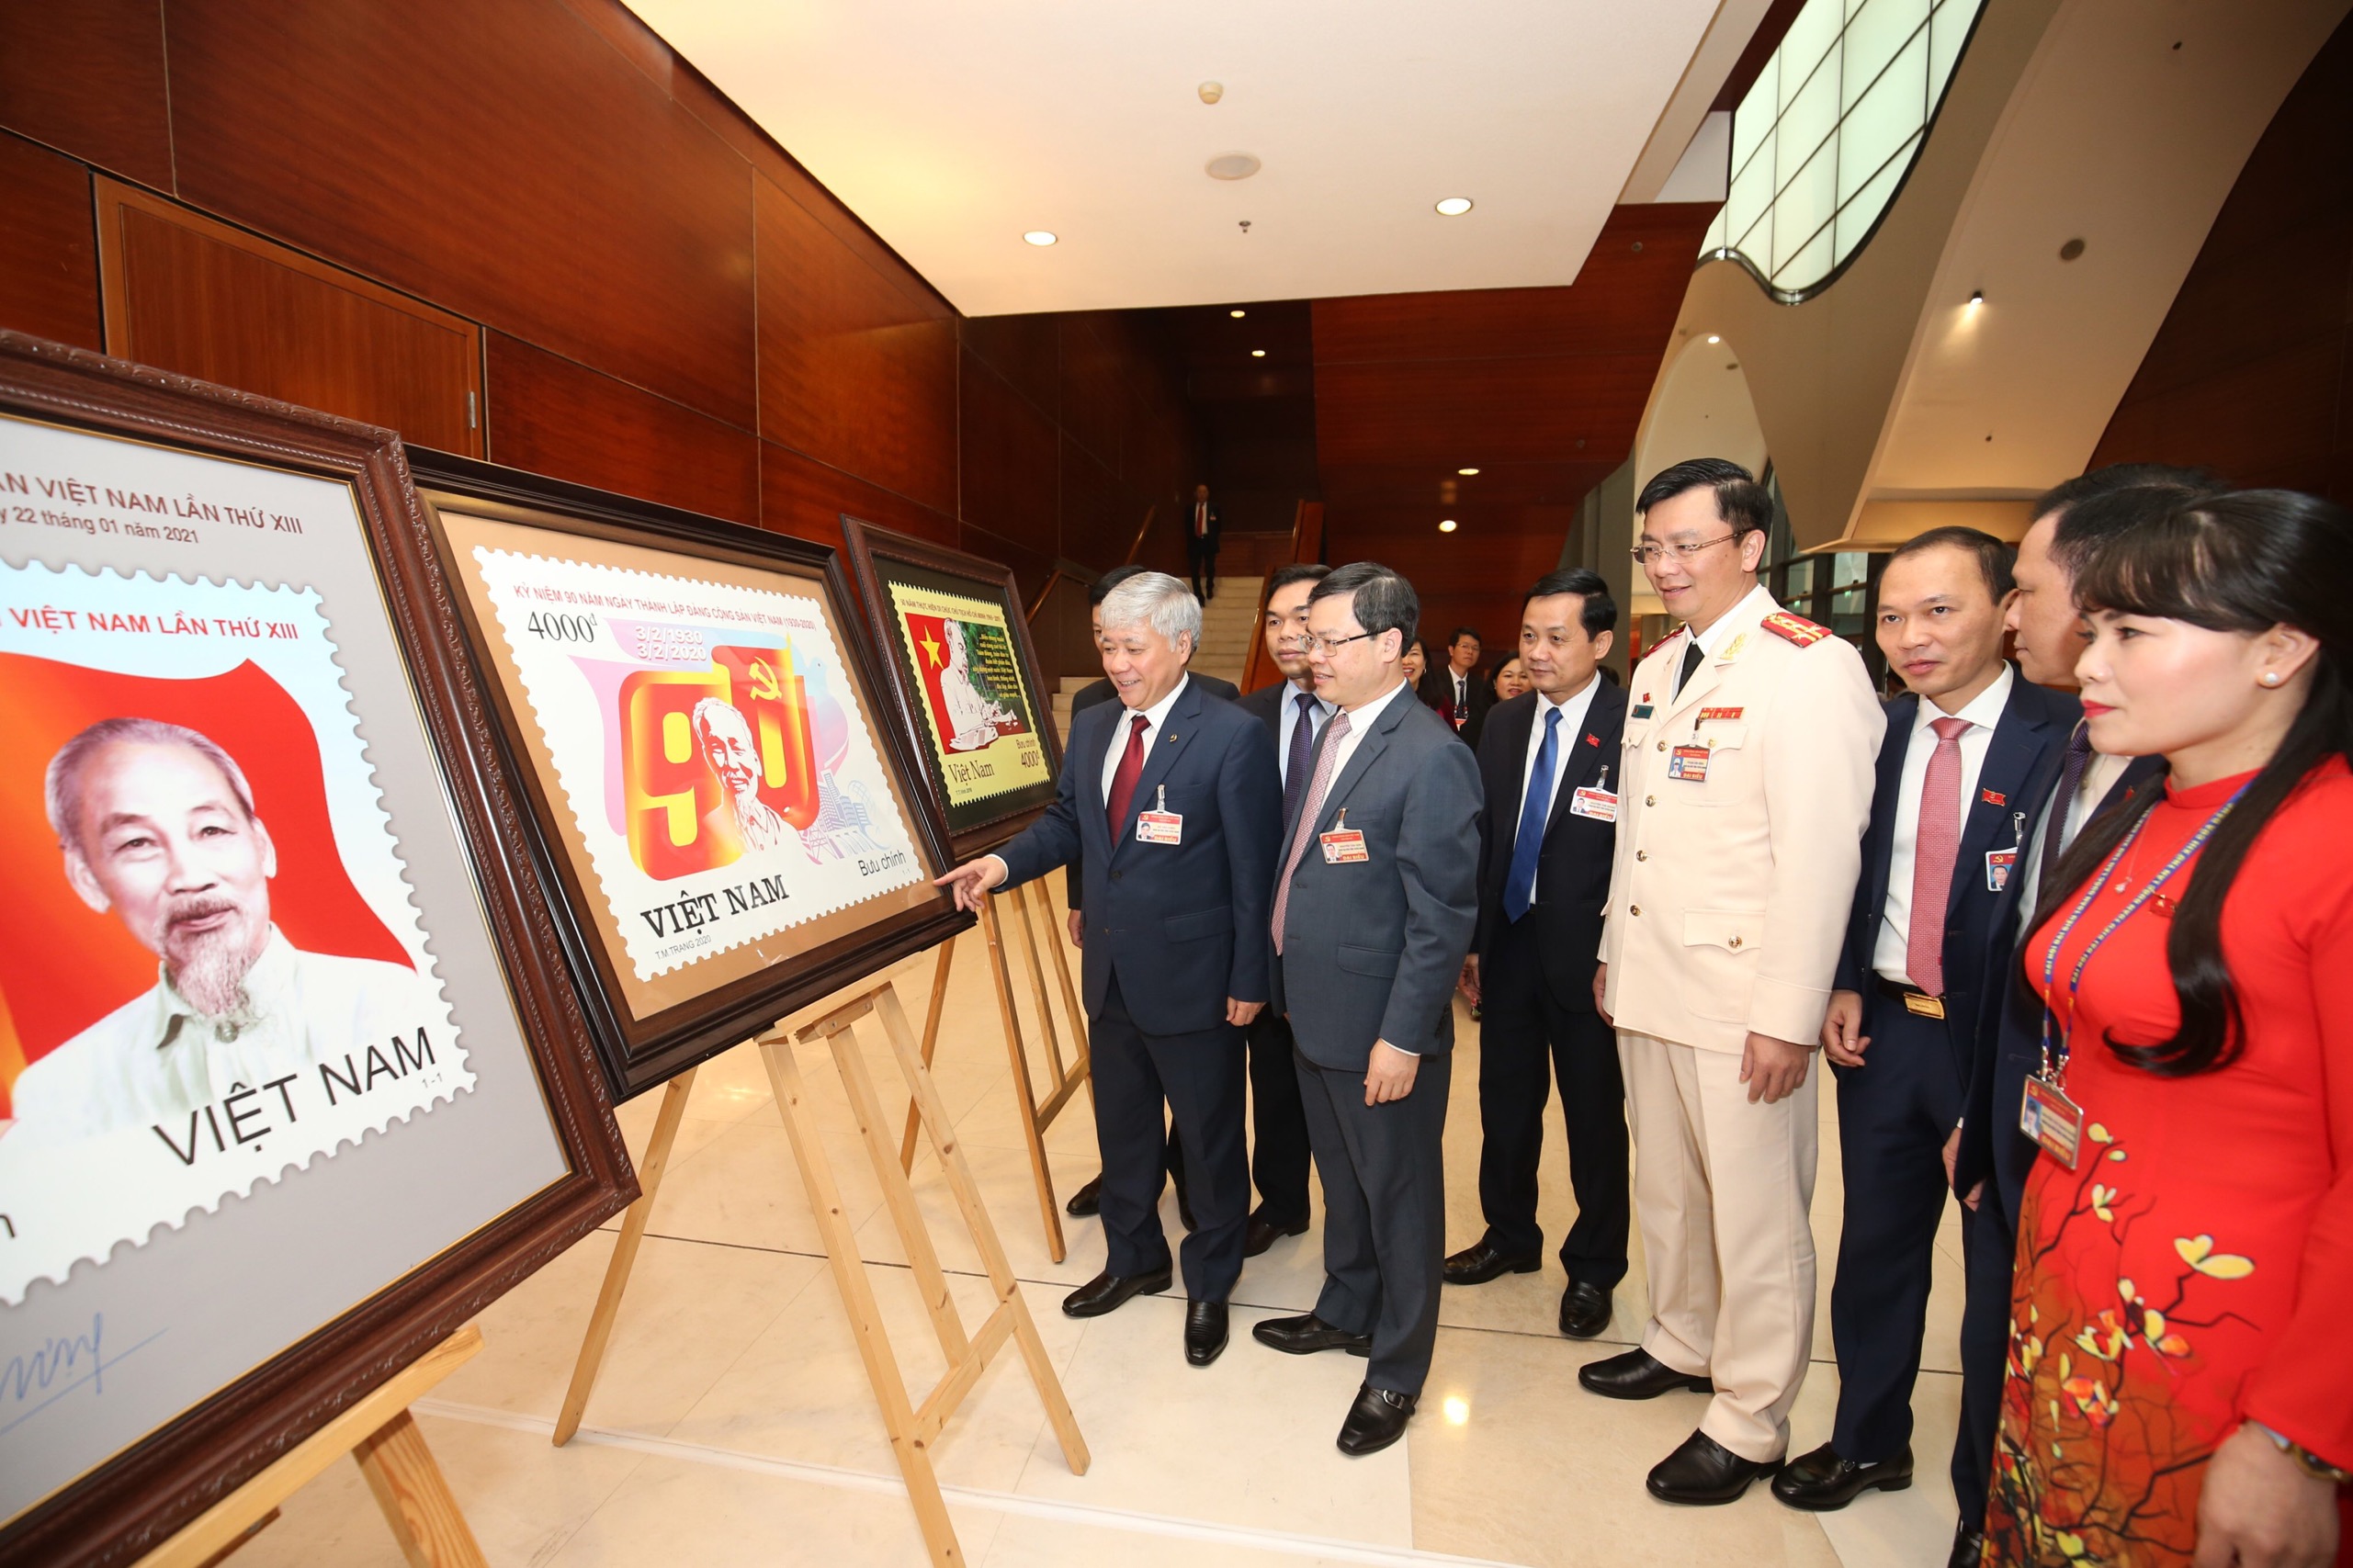 Bộ trưởng, Chủ nhiệm Đỗ Văn Chiến và các đại biểu thăm khu trưng bày bộ tem đặc biệt chào mừng Đại hội